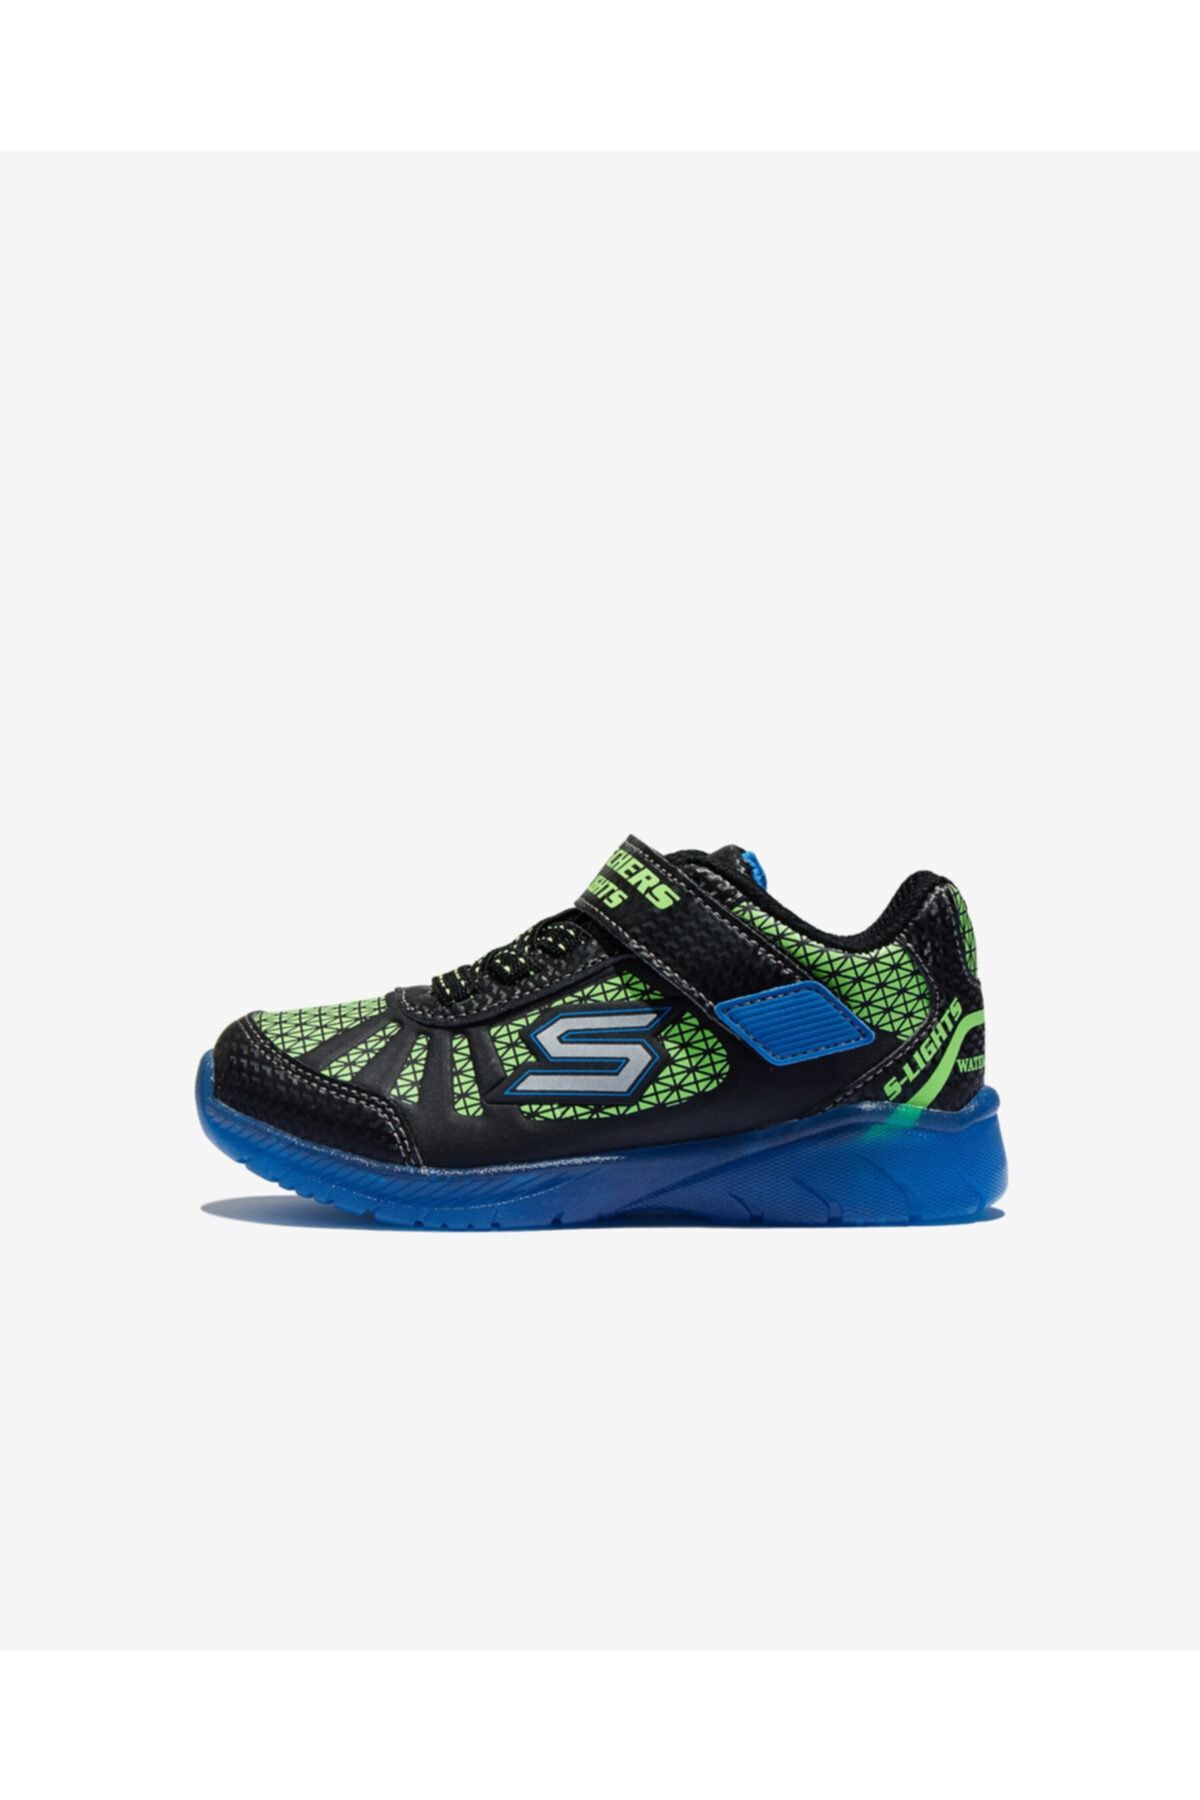 Skechers İLLUMİ-BRİGHTS Küçük Erkek Çocuk Siyah Spor Ayakkabı - 401520N BBLM